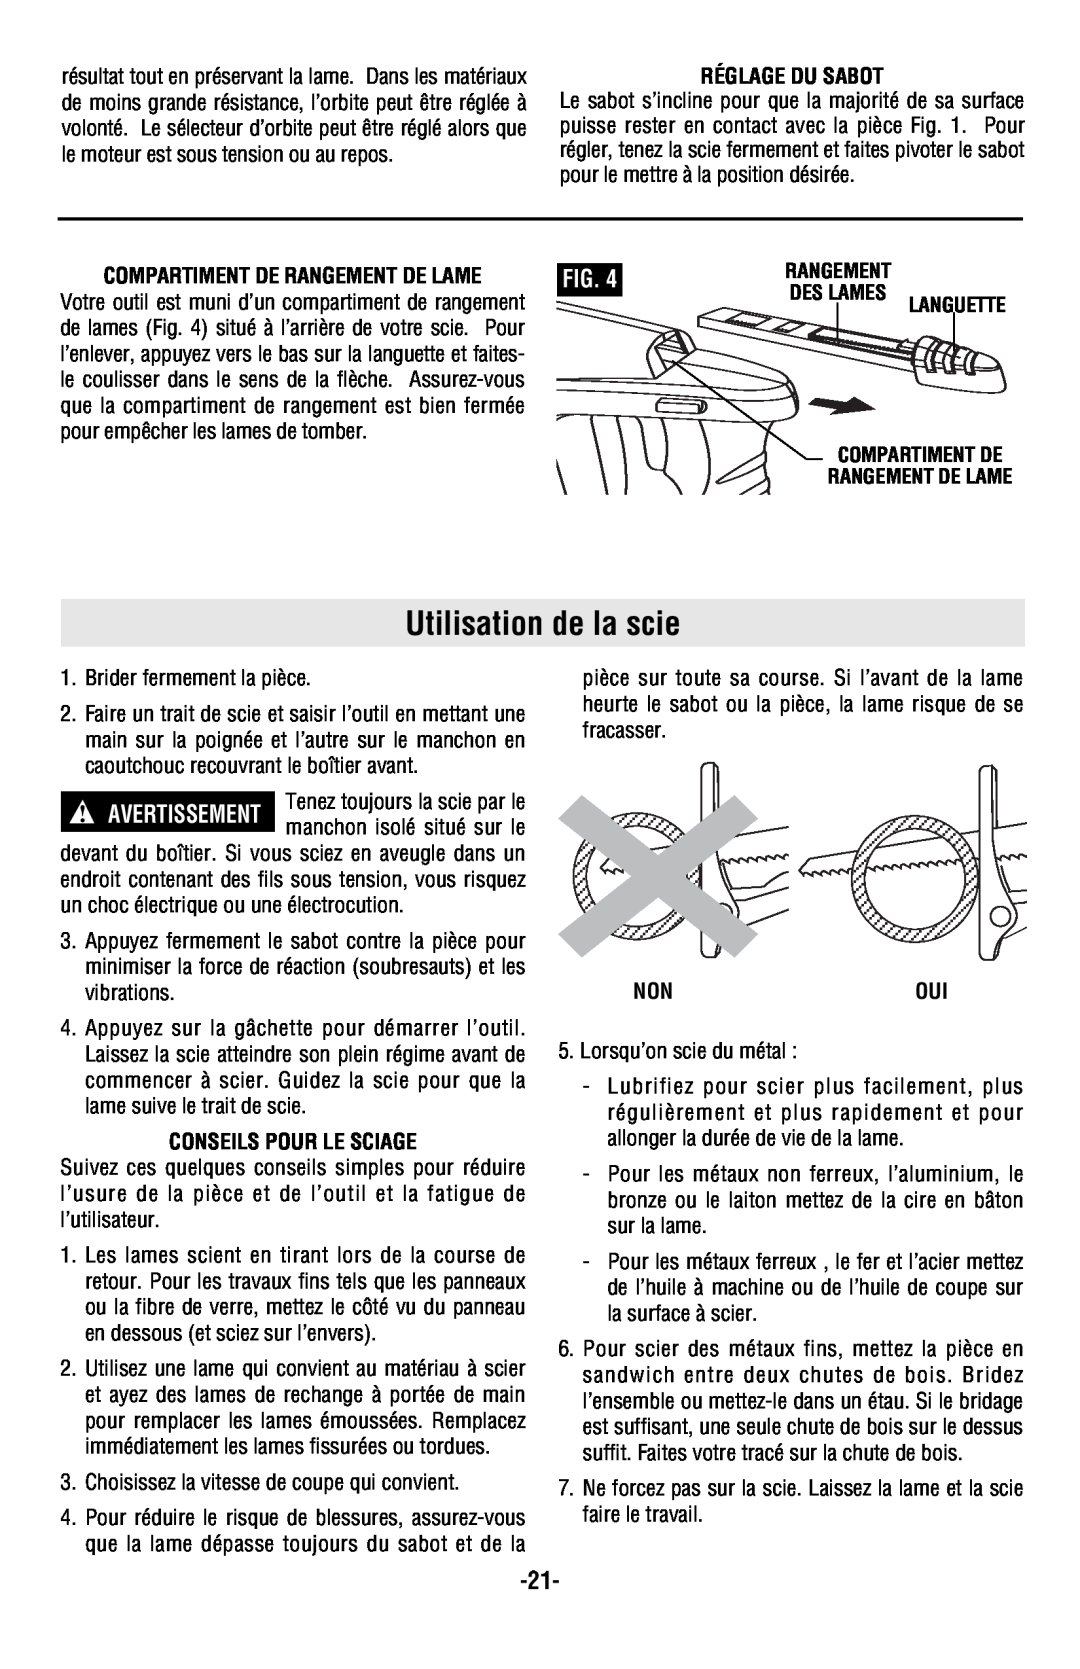 Skil 9350 Utilisation de la scie, Réglage Du Sabot, Compartiment De Rangement De Lame, Conseils Pour Le Sciage, Nonoui 